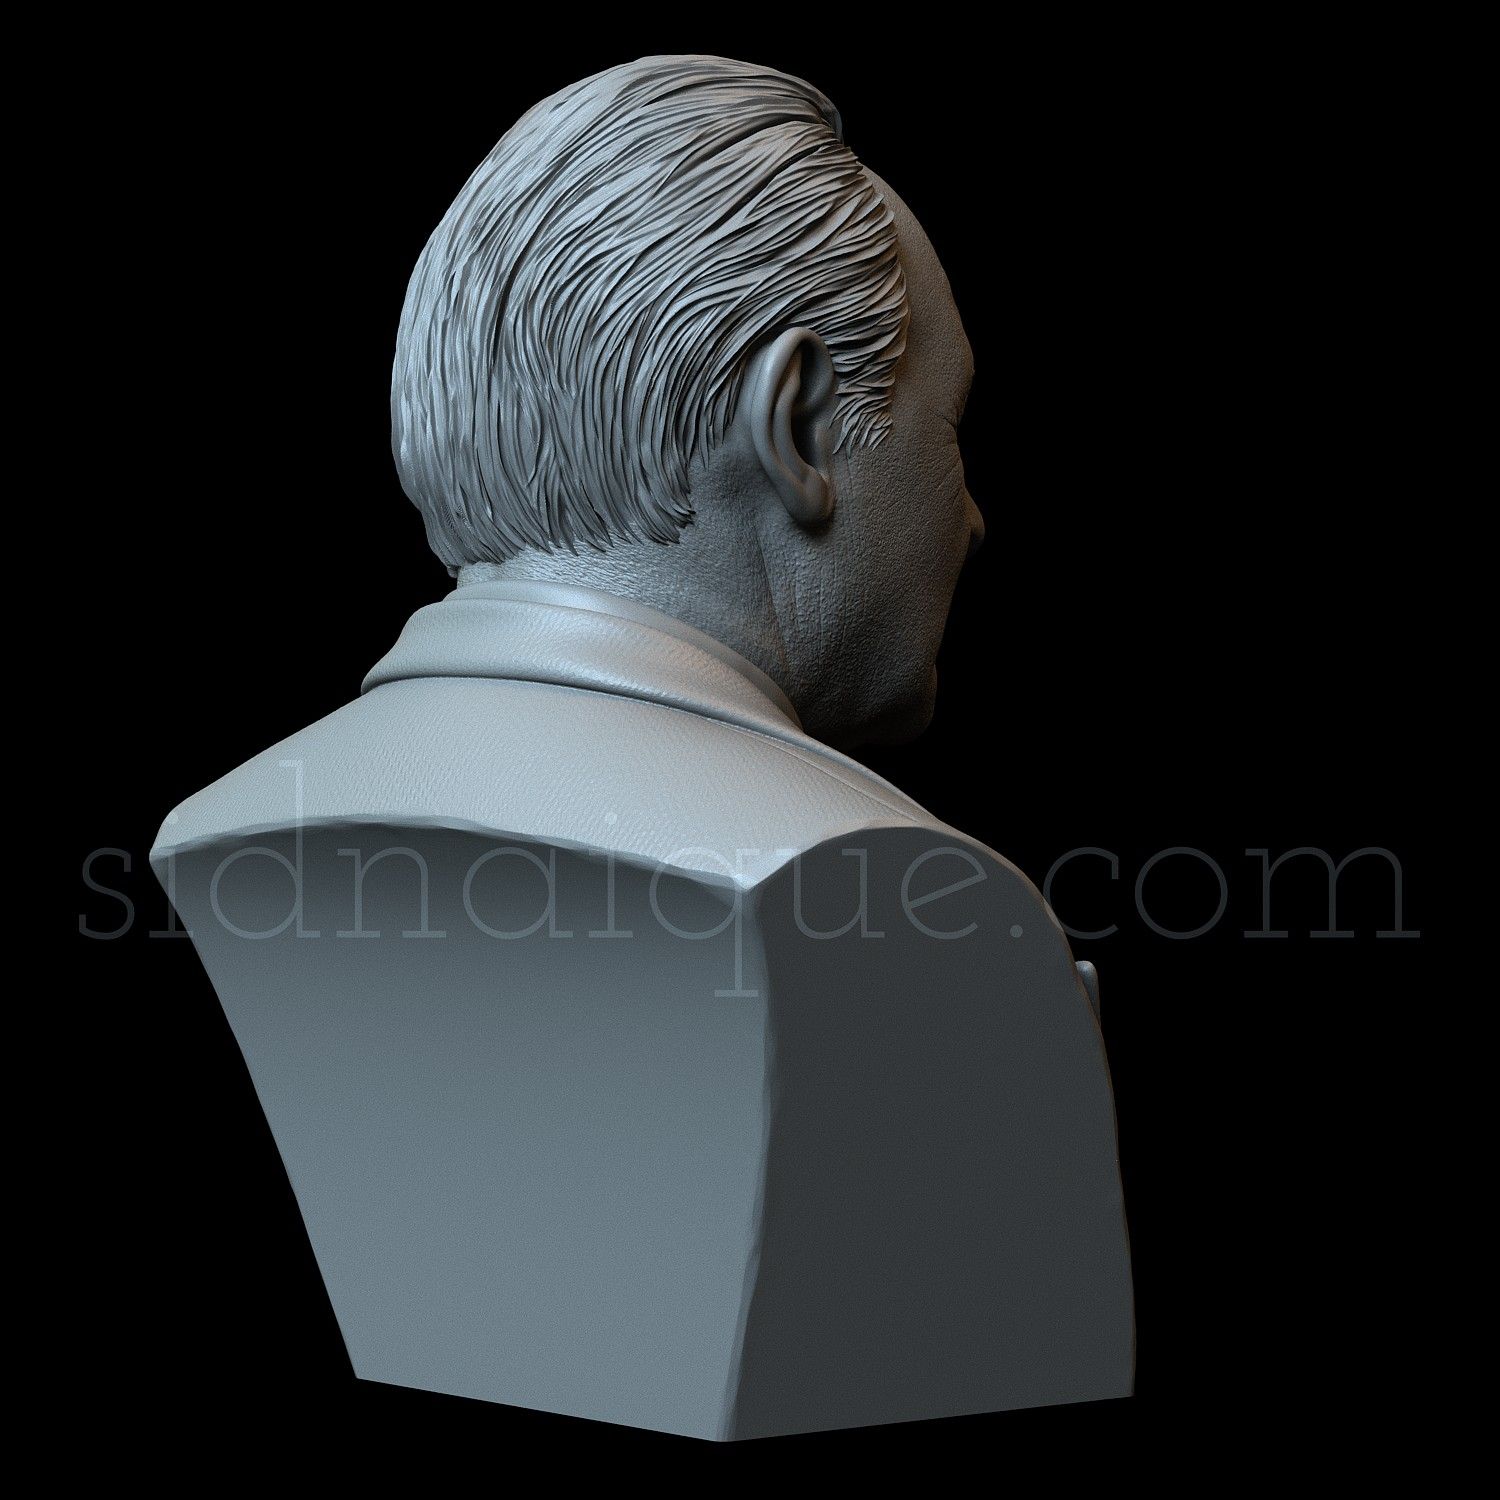 Hopkins07.jpg Файл 3D Сэр Энтони Хопкинс・Модель для загрузки и 3D-печати, sidnaique